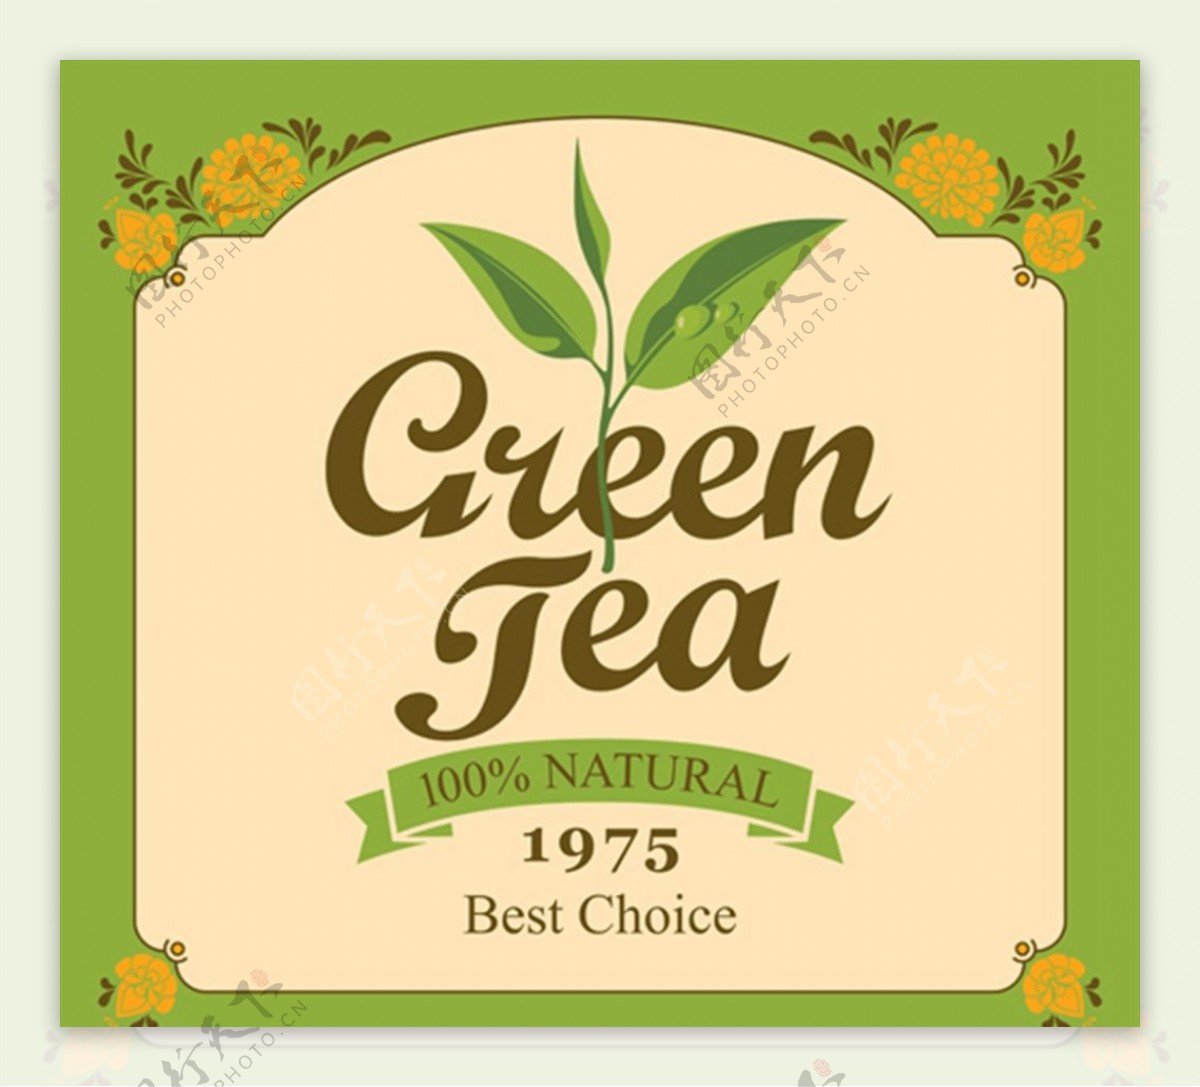 绿茶标贴矢量图片